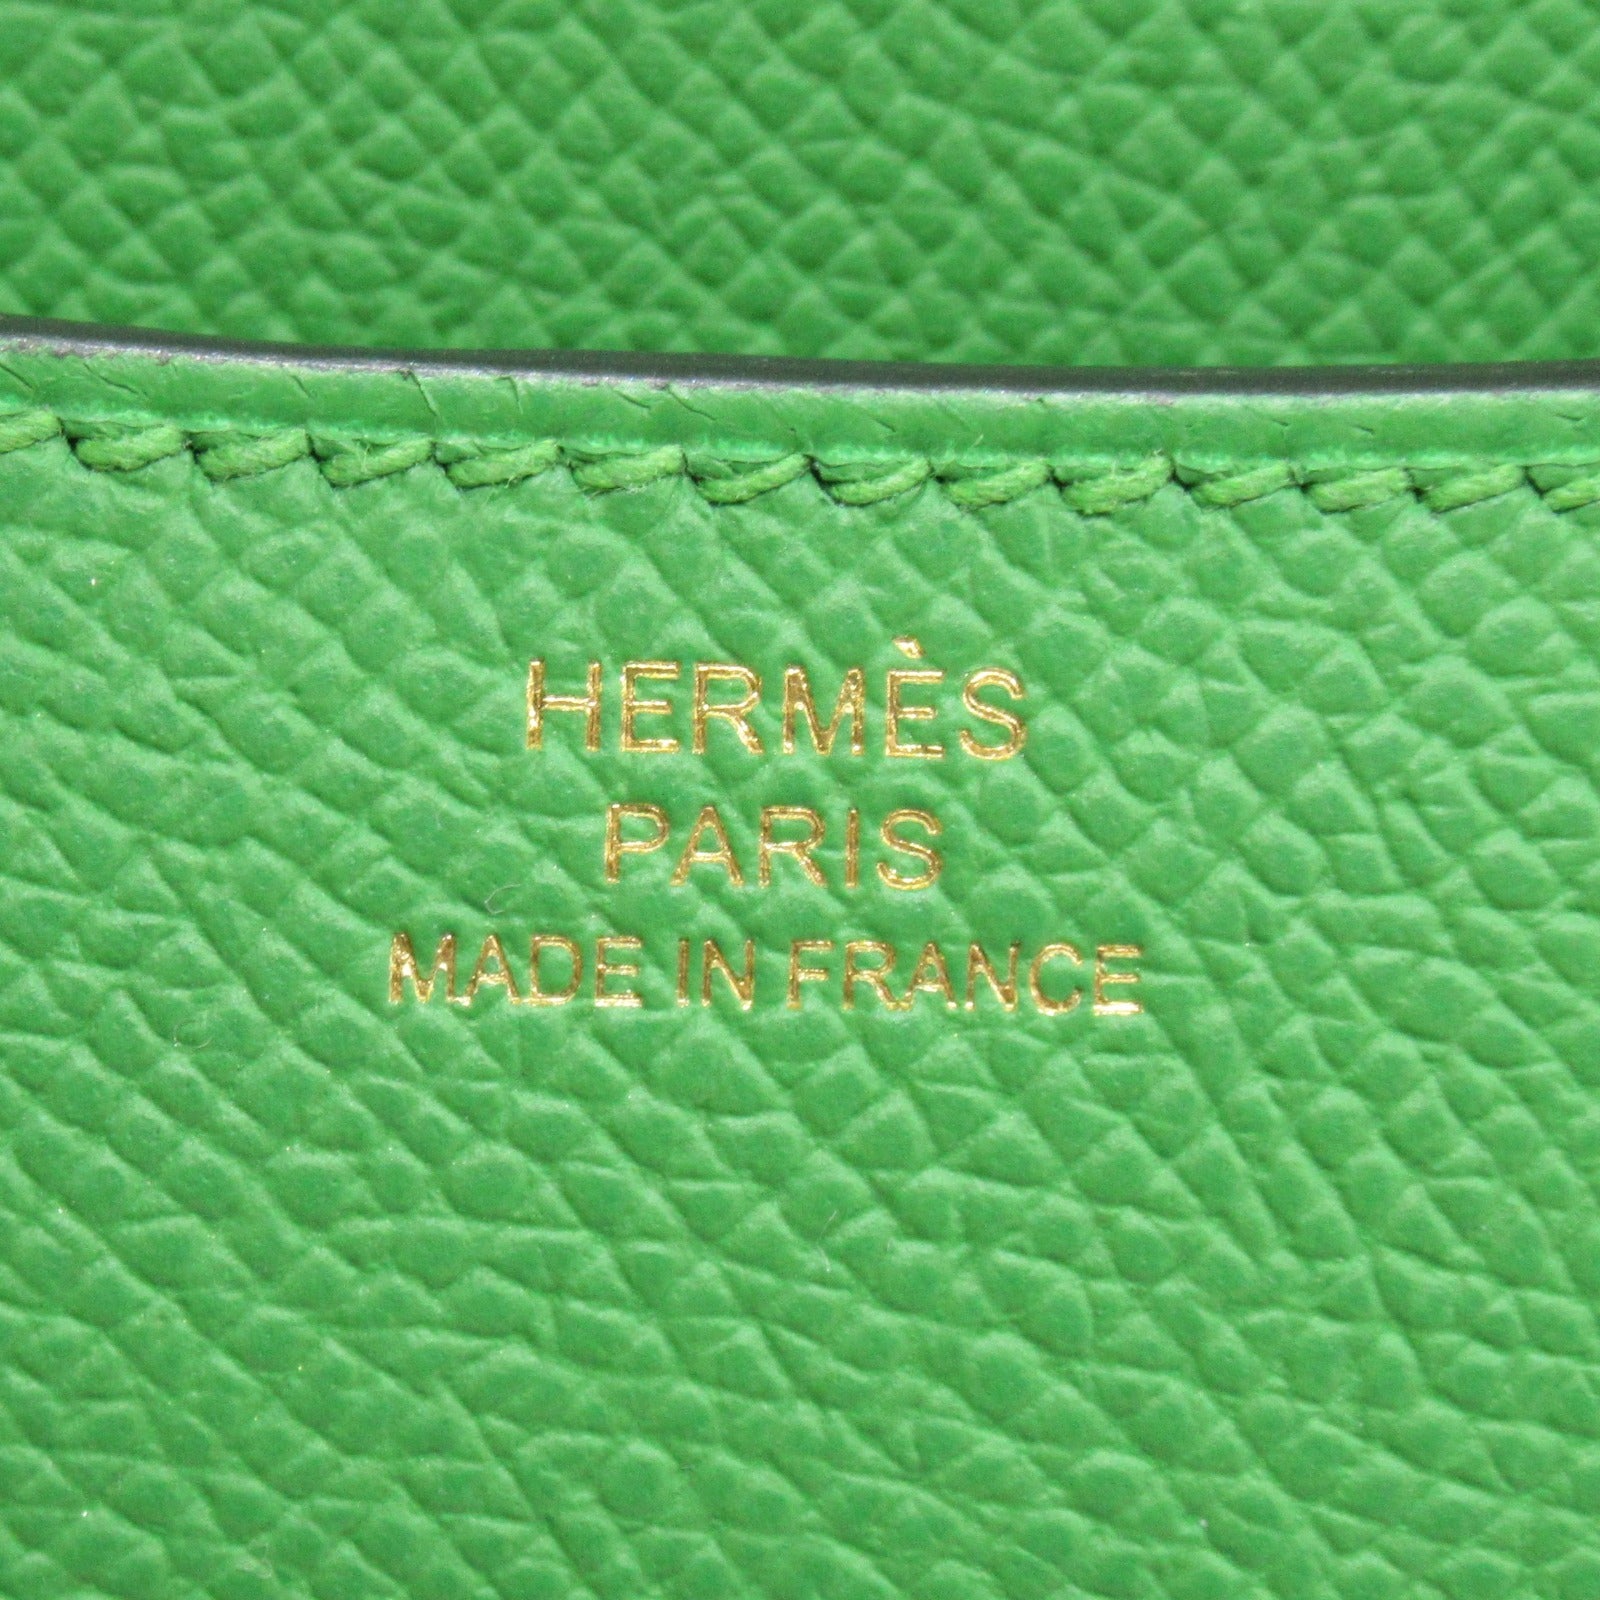 Hermes Hermes Constance Mini Veil Yucca Shoulder Bag Leather Epsom  Green